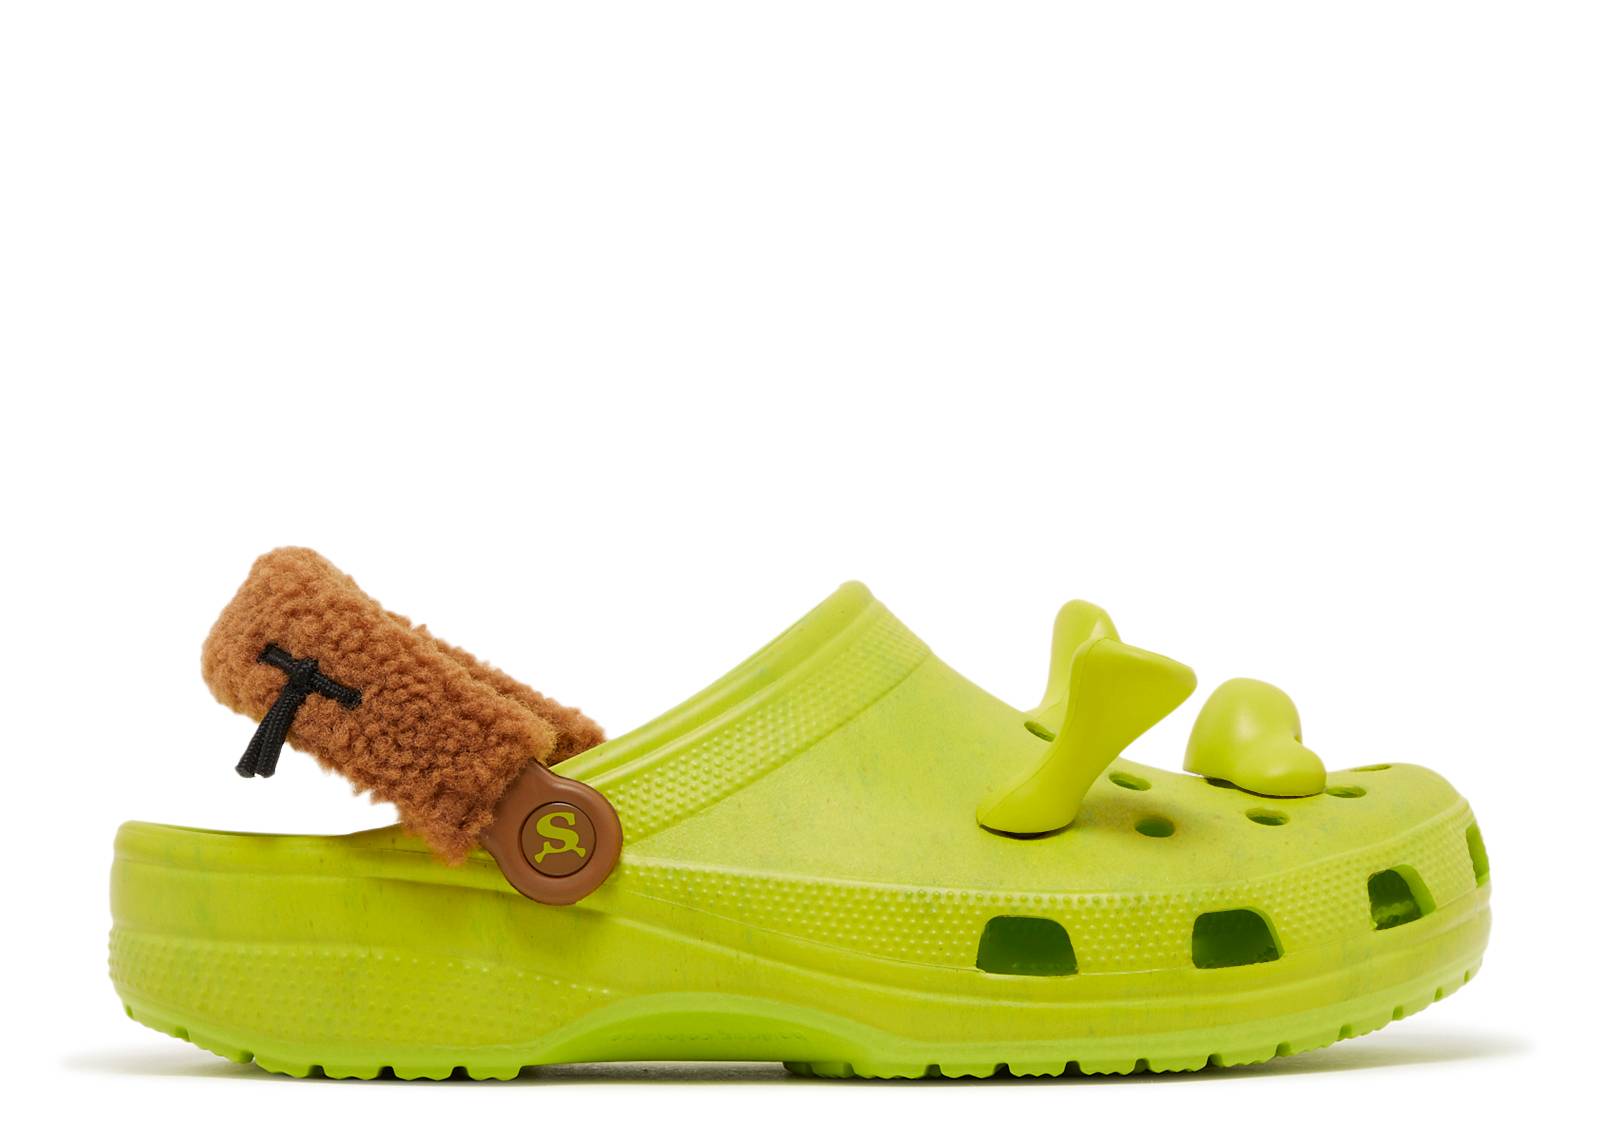 Crocs DreamWorks X Classic Clog 'Shrek' Pas Cher | Crocs Outlet